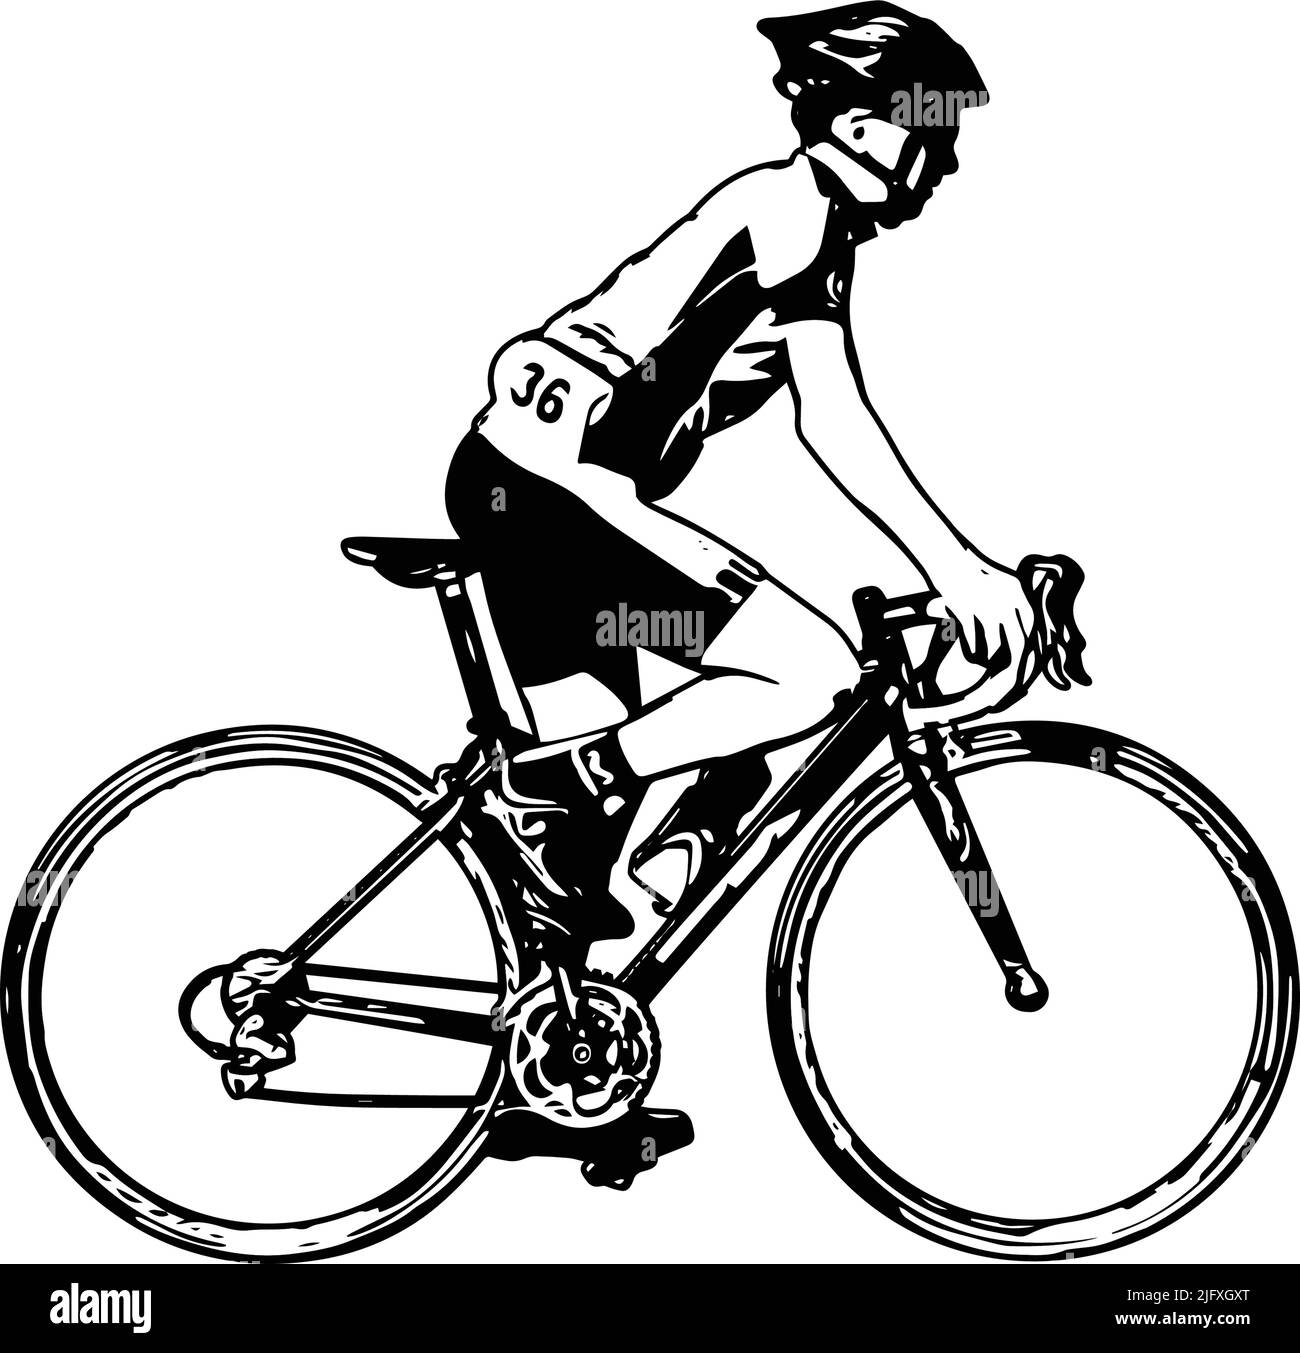 Skizzendarstellung für Fahrradfahrer - Vektor Stock Vektor